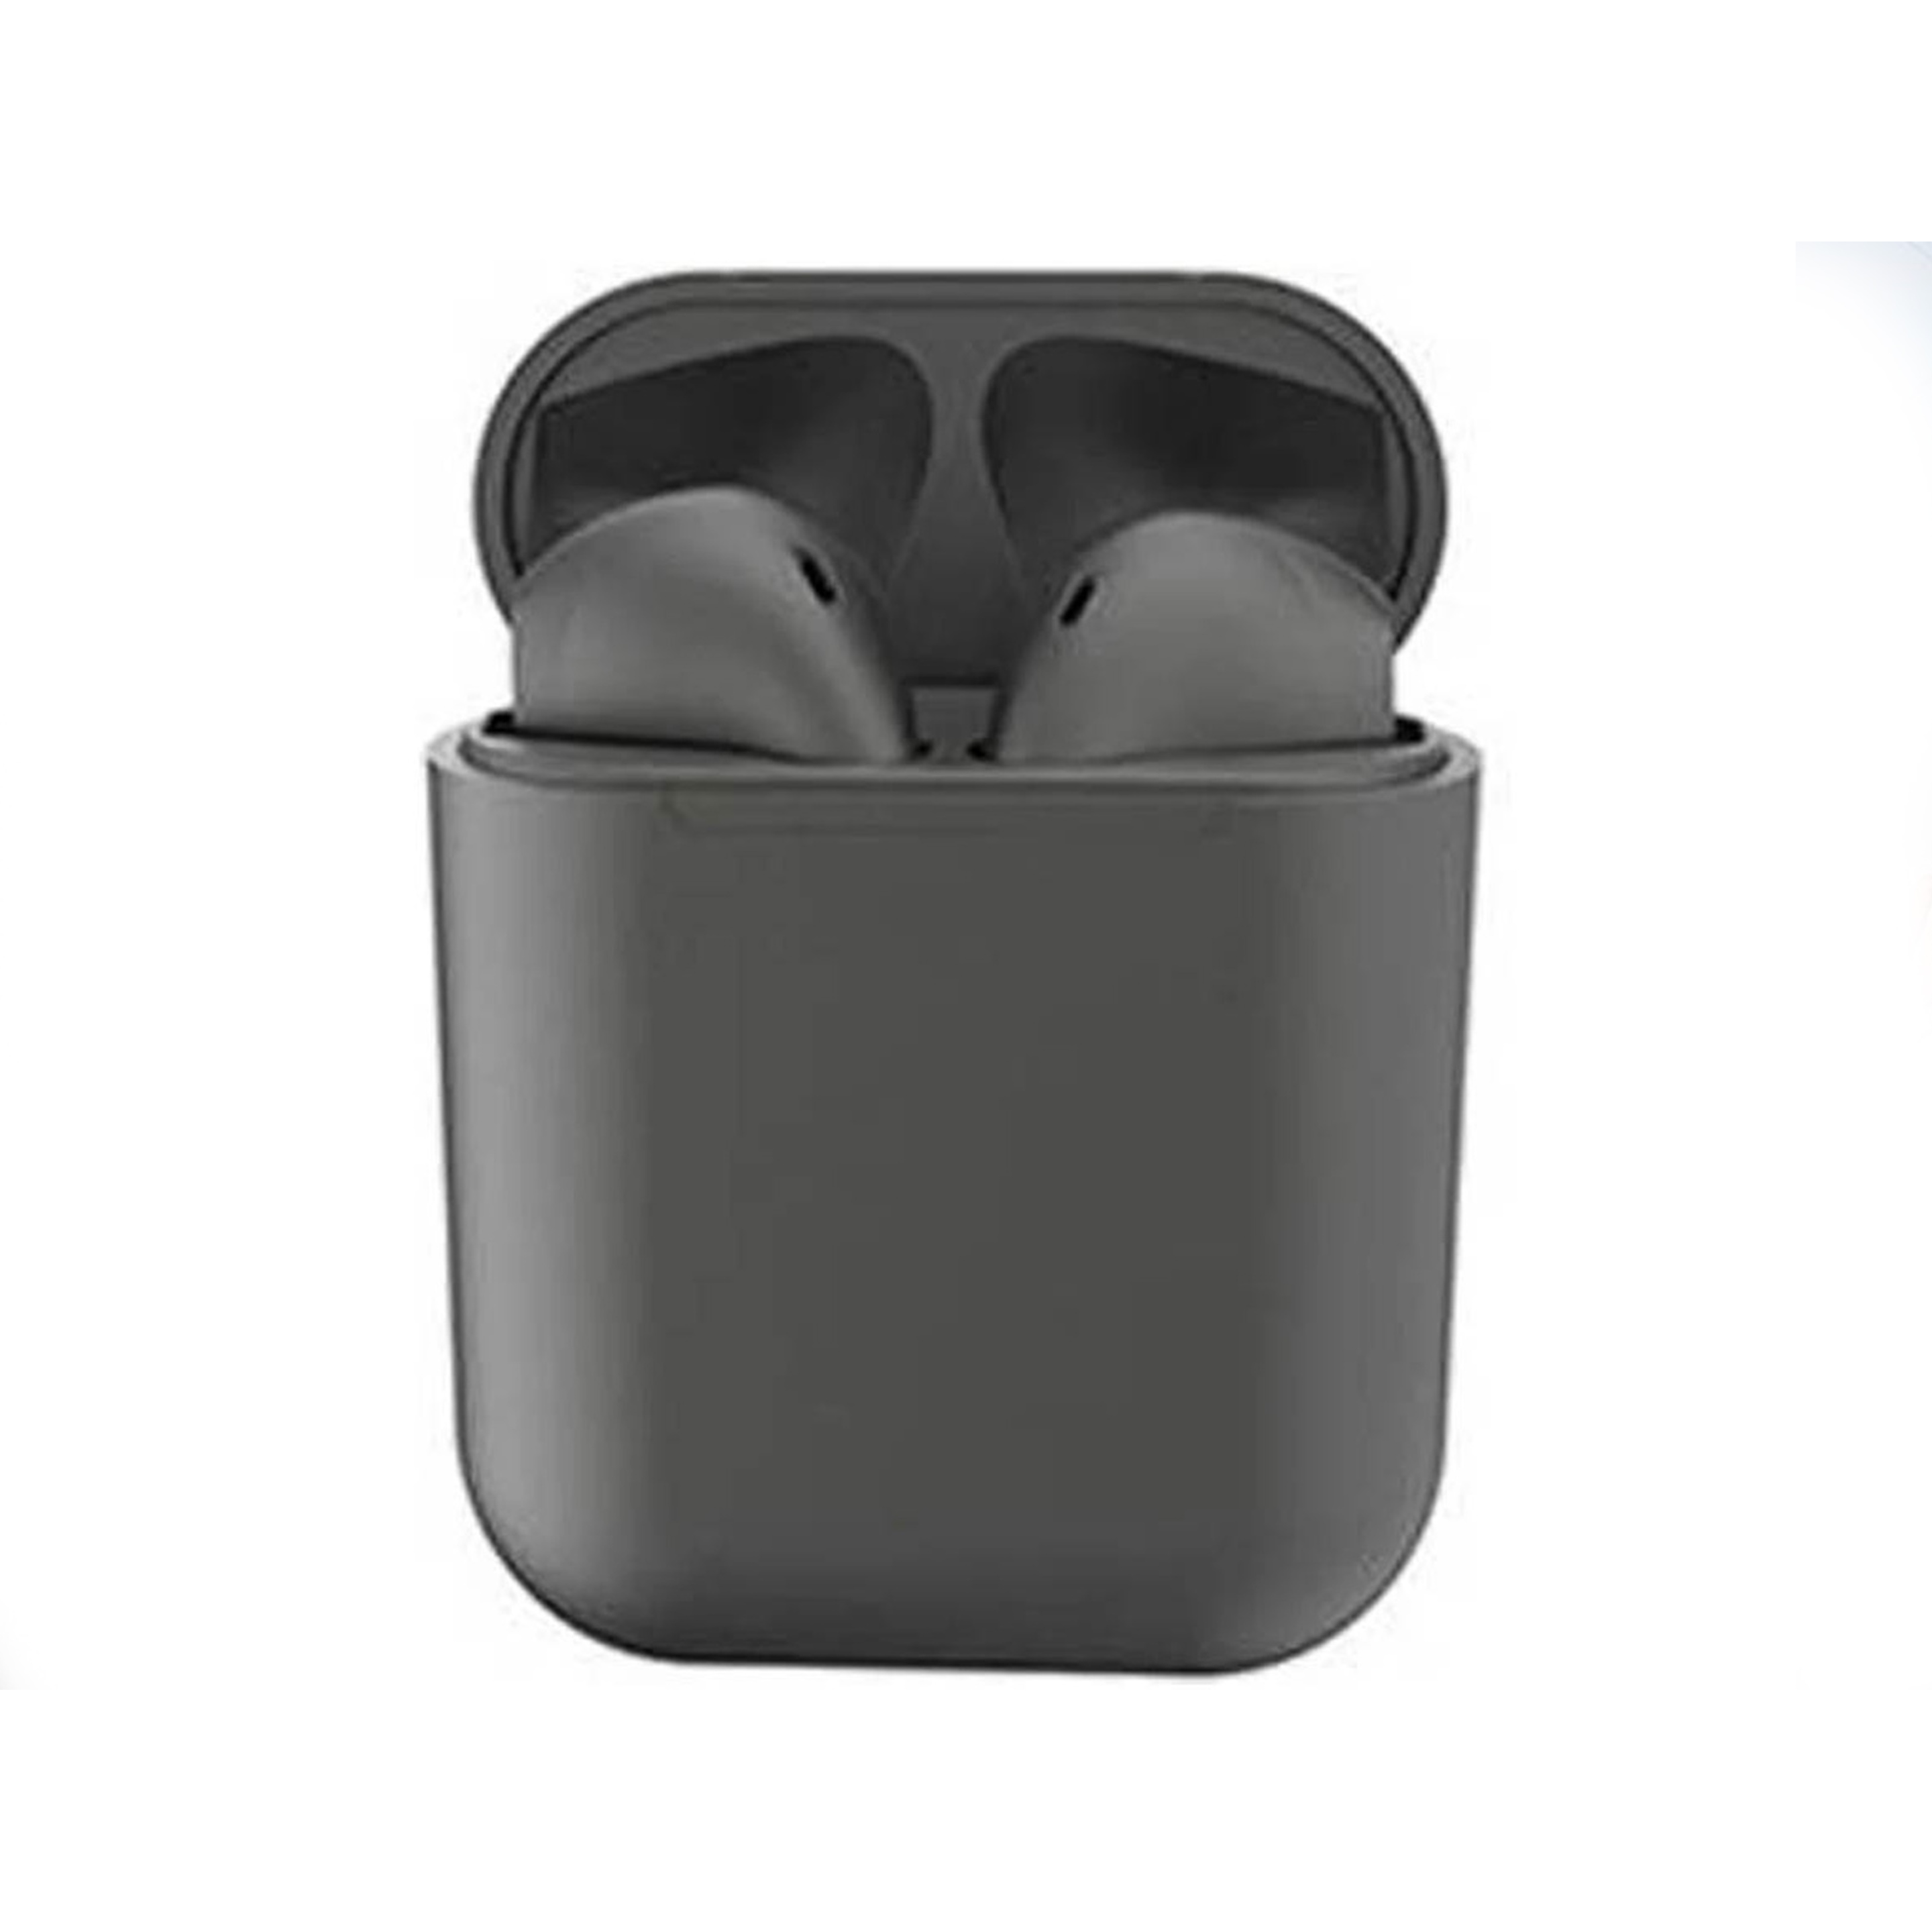 Auriculares Bluetooth Caja De Carga Inpods - negro - 